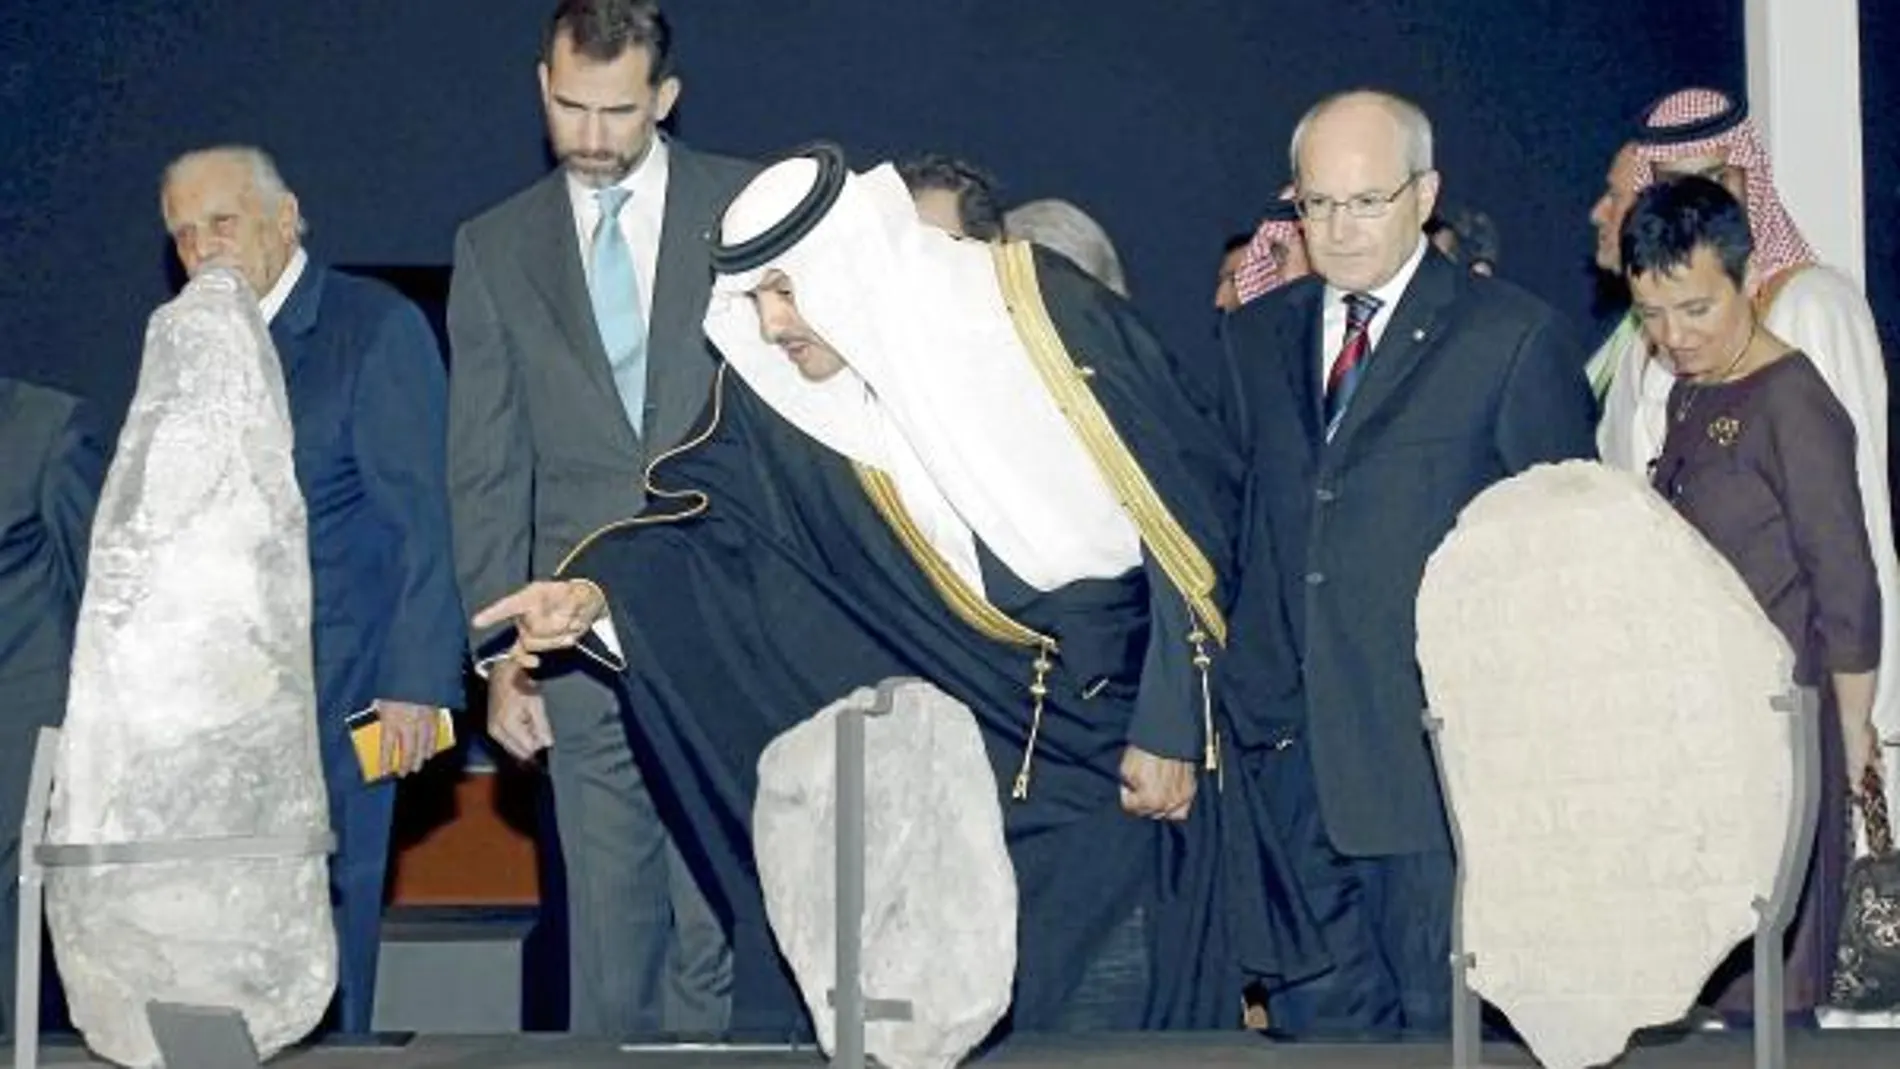 El príncipe de Arabia Saudí, Bi Salman bin Abdulaziz muestra Don Felipe y al presidente de la Generalitat, José Montilla, los hallazgos arqueológicos de la exposición.